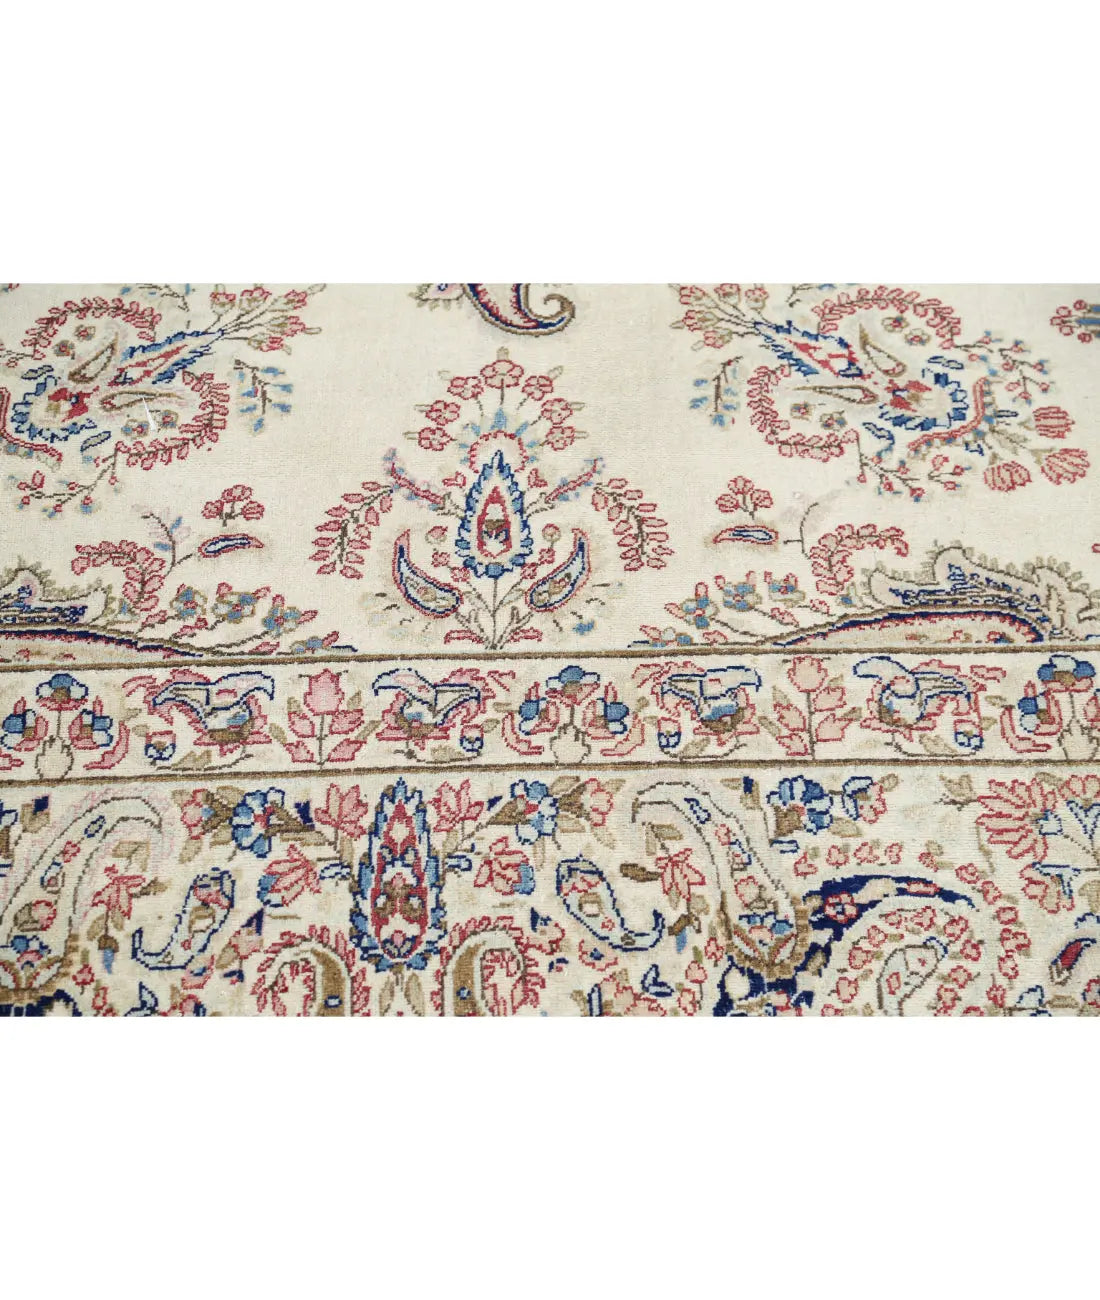 Hand Knotted Persian Kerman Wool Rug - 9'9'' x 13'2'' - Arteverk Rugs Area rug